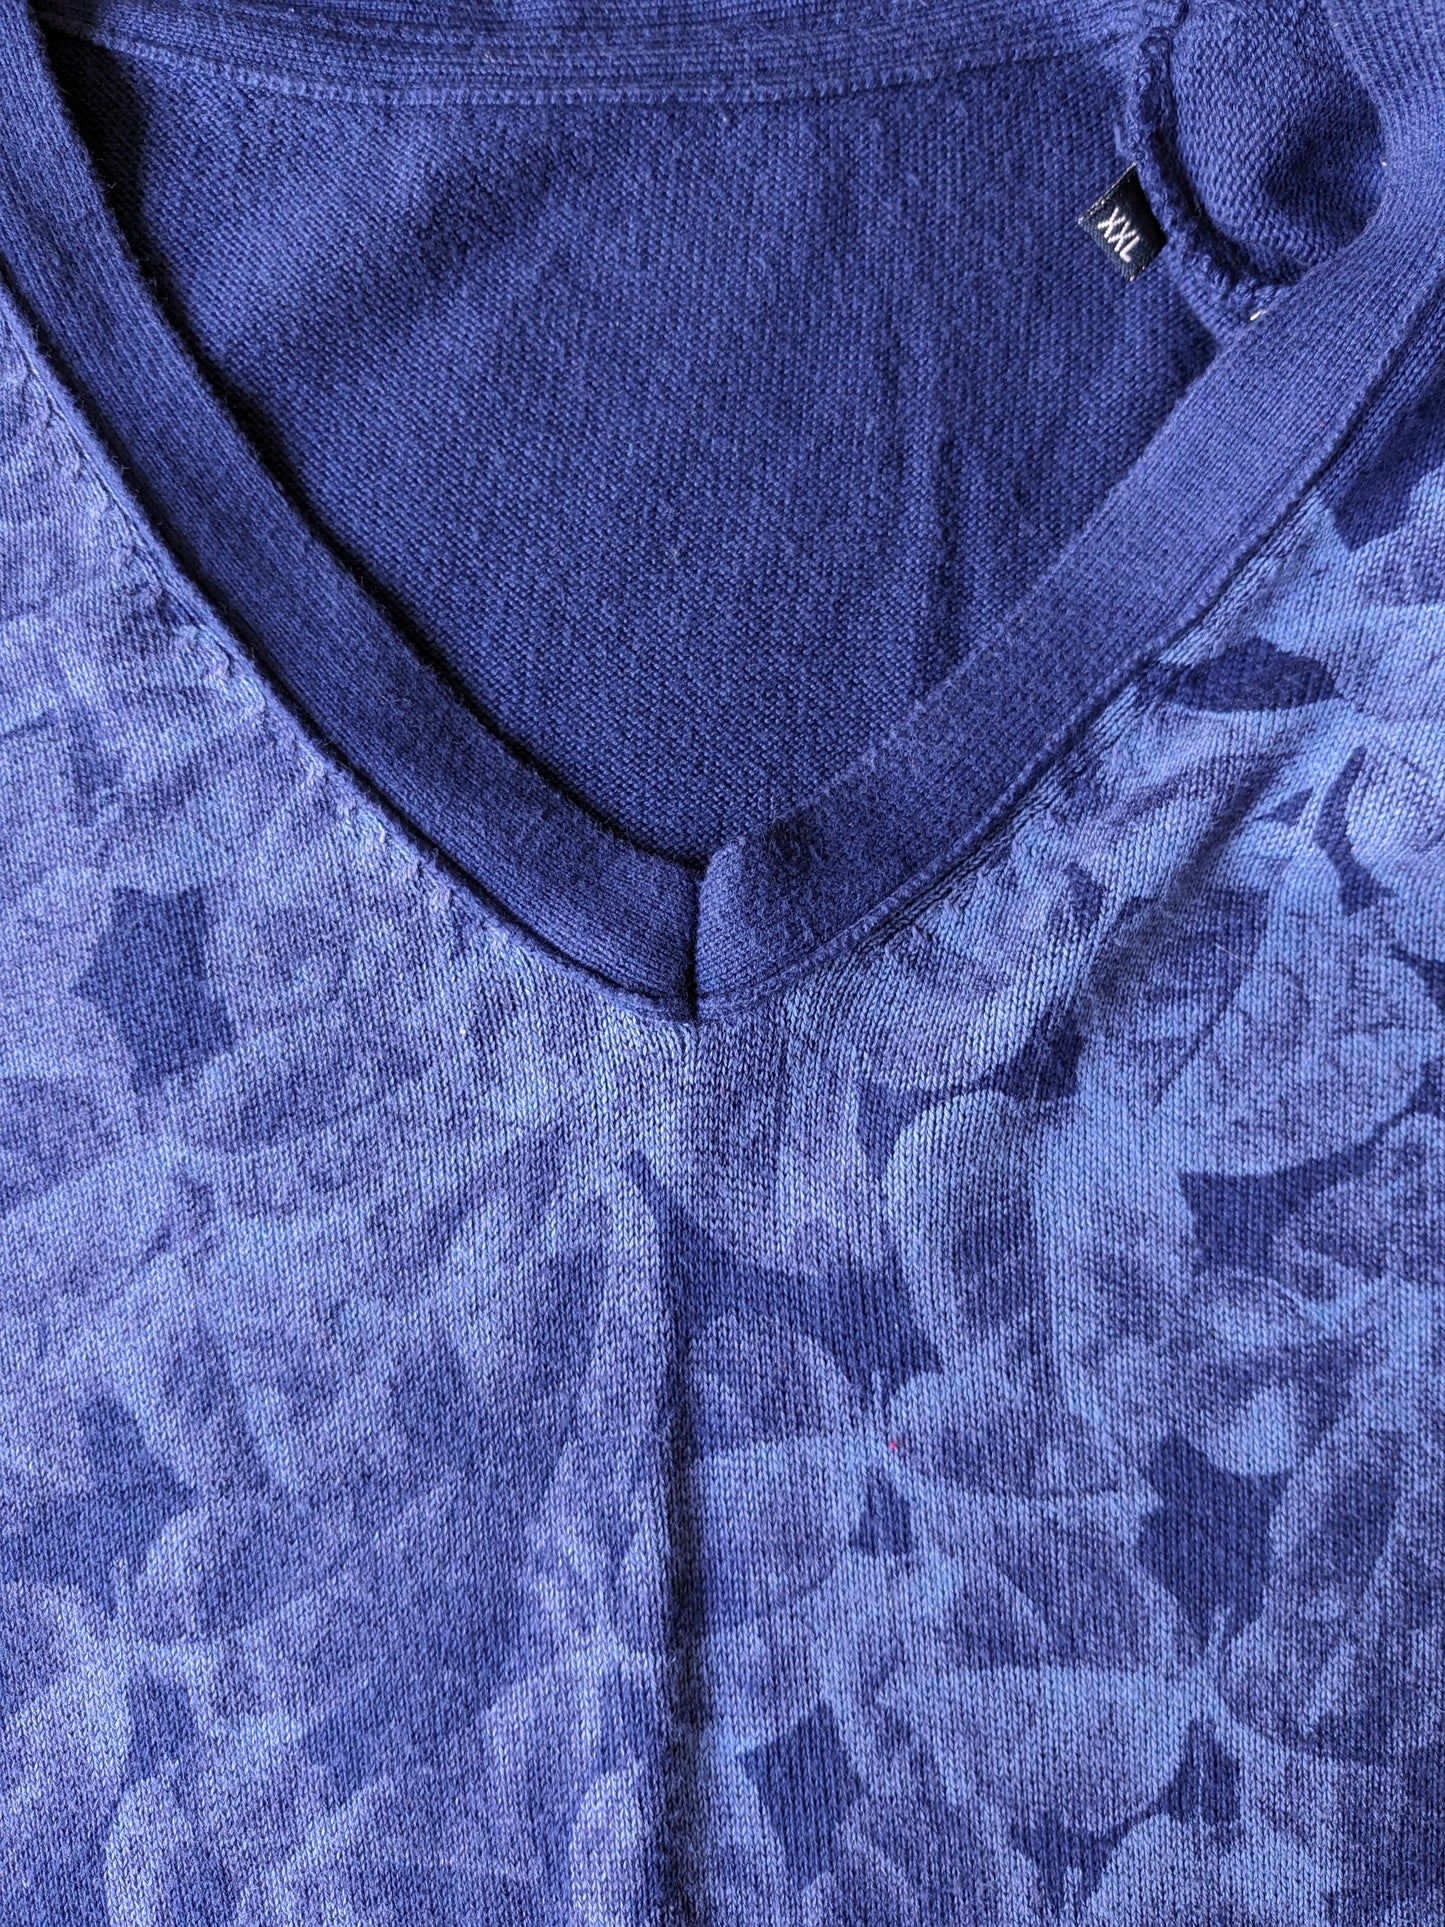 Maglione senza marca. Motivo a foglie blu. Dimensione XXL / 2XL.